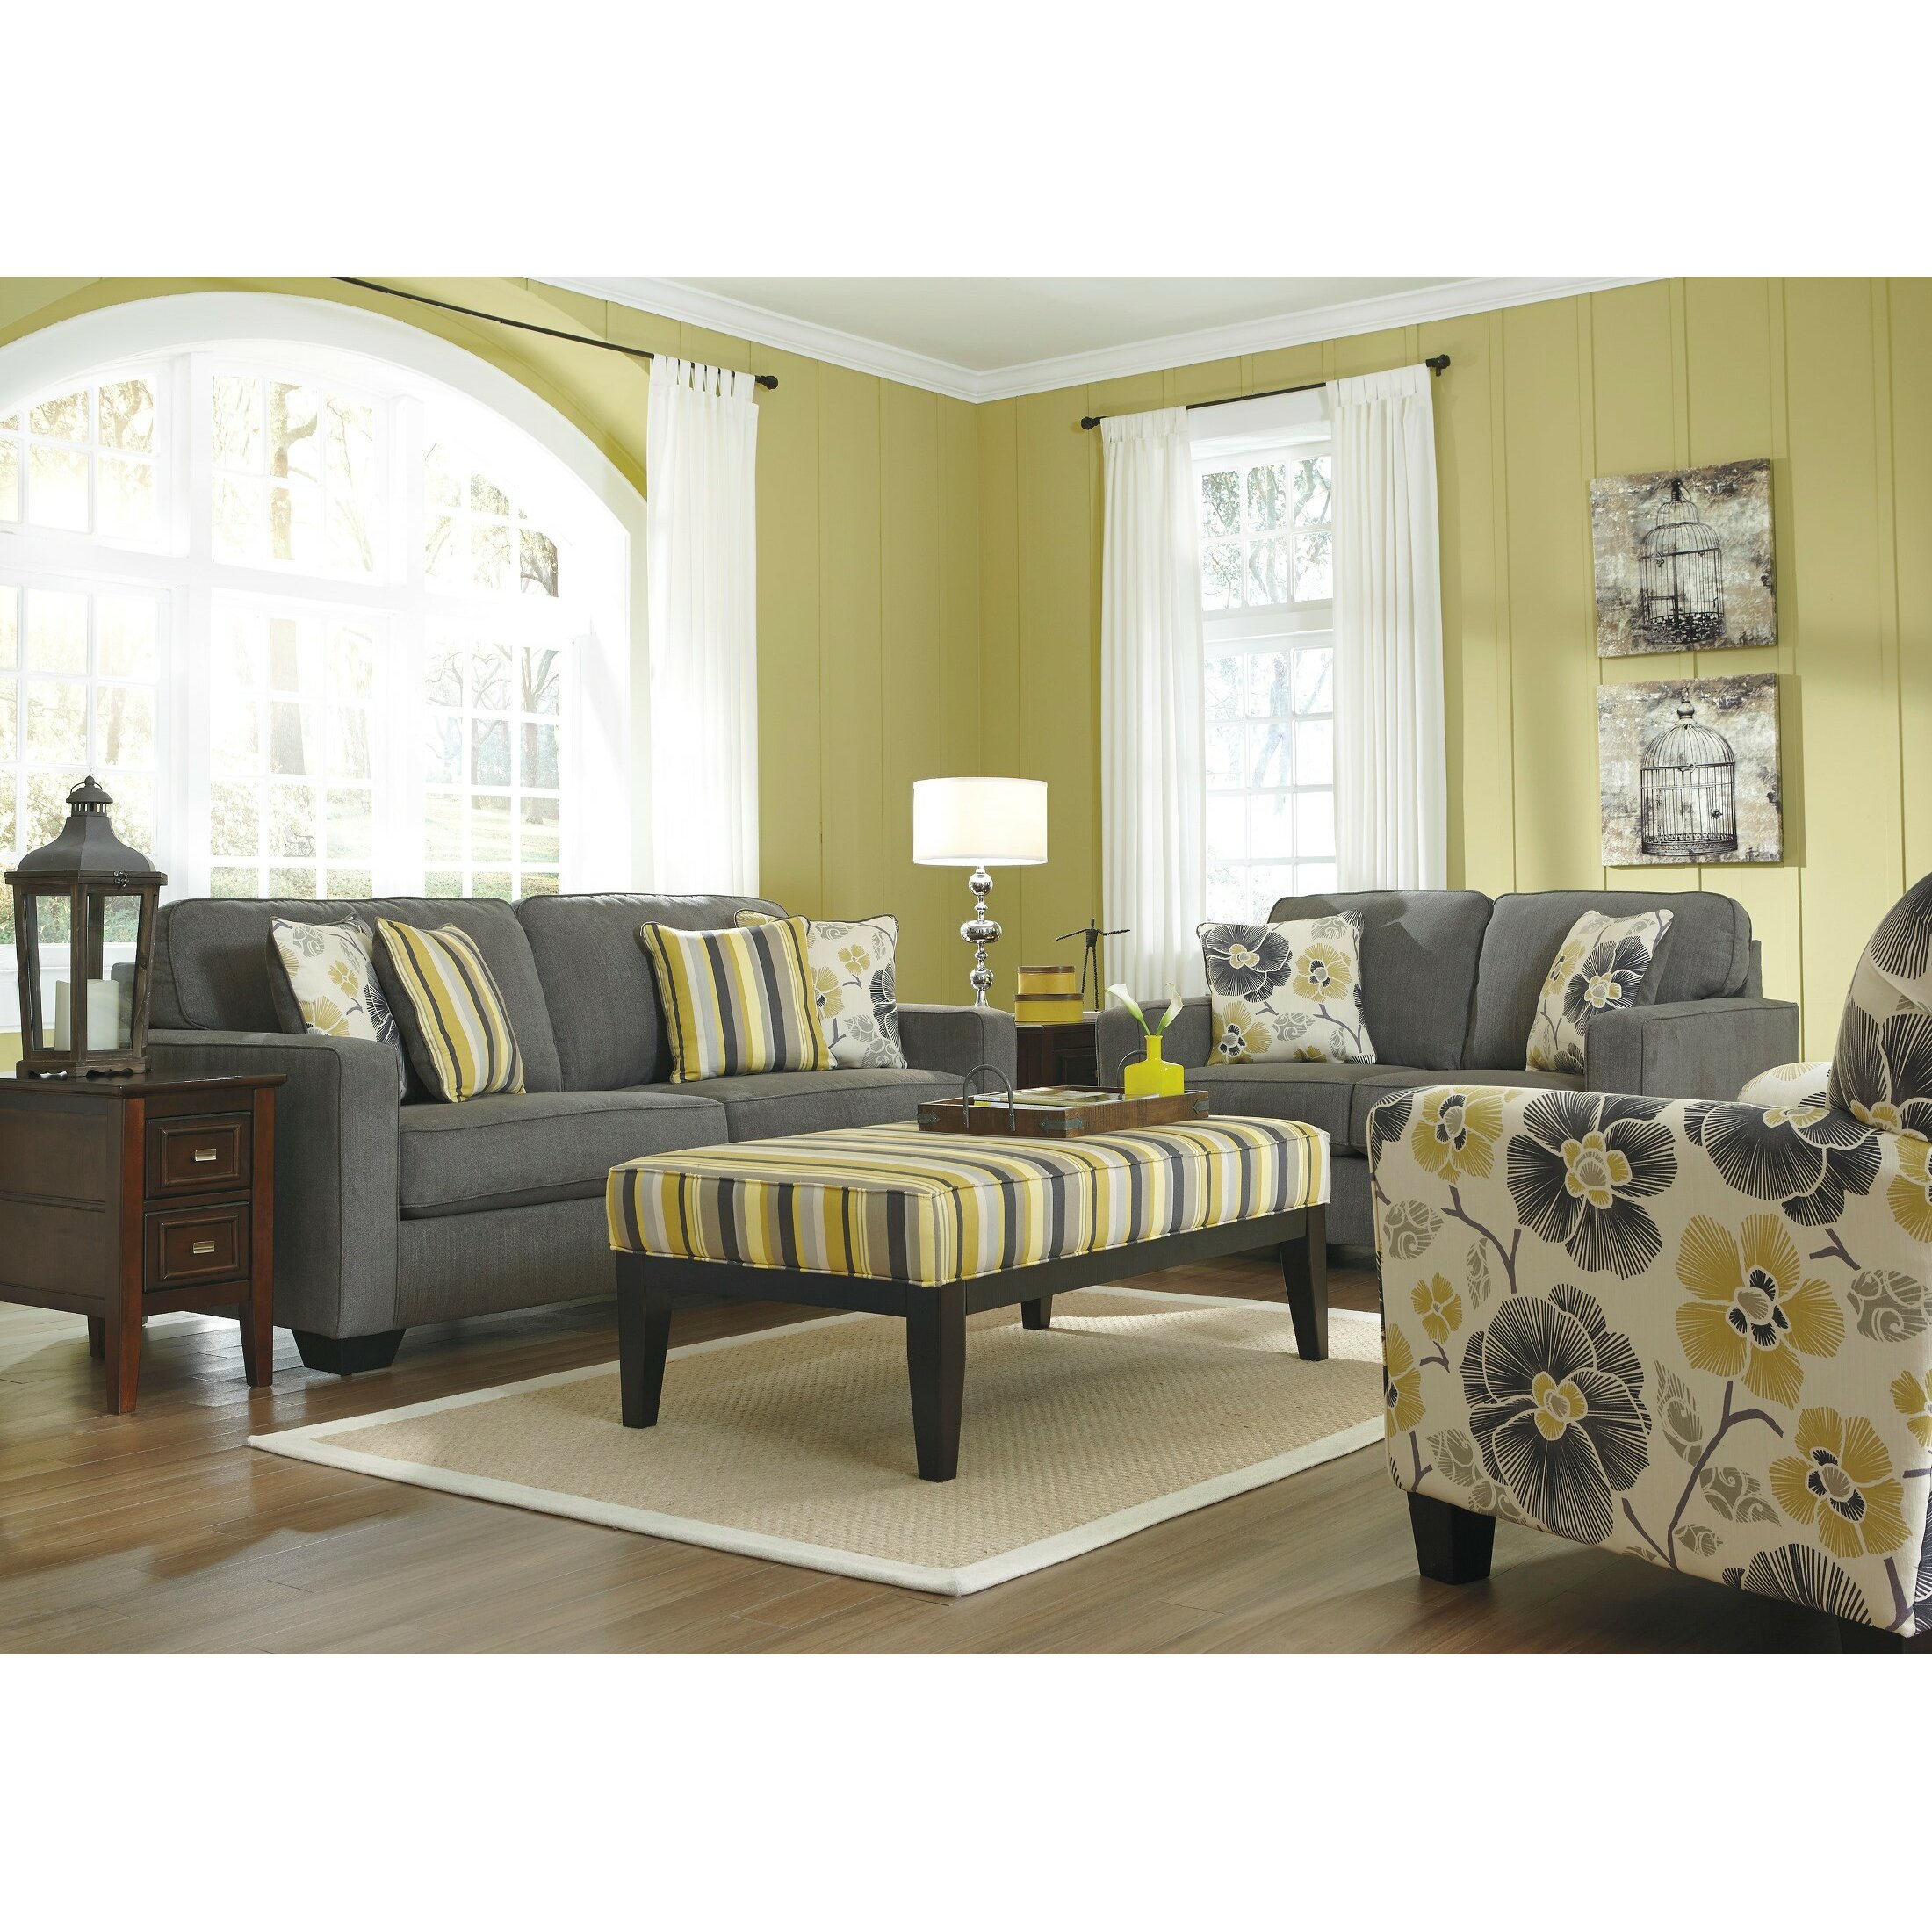 Latitude Run Safia Living Room Collection  Reviews  Wayfair